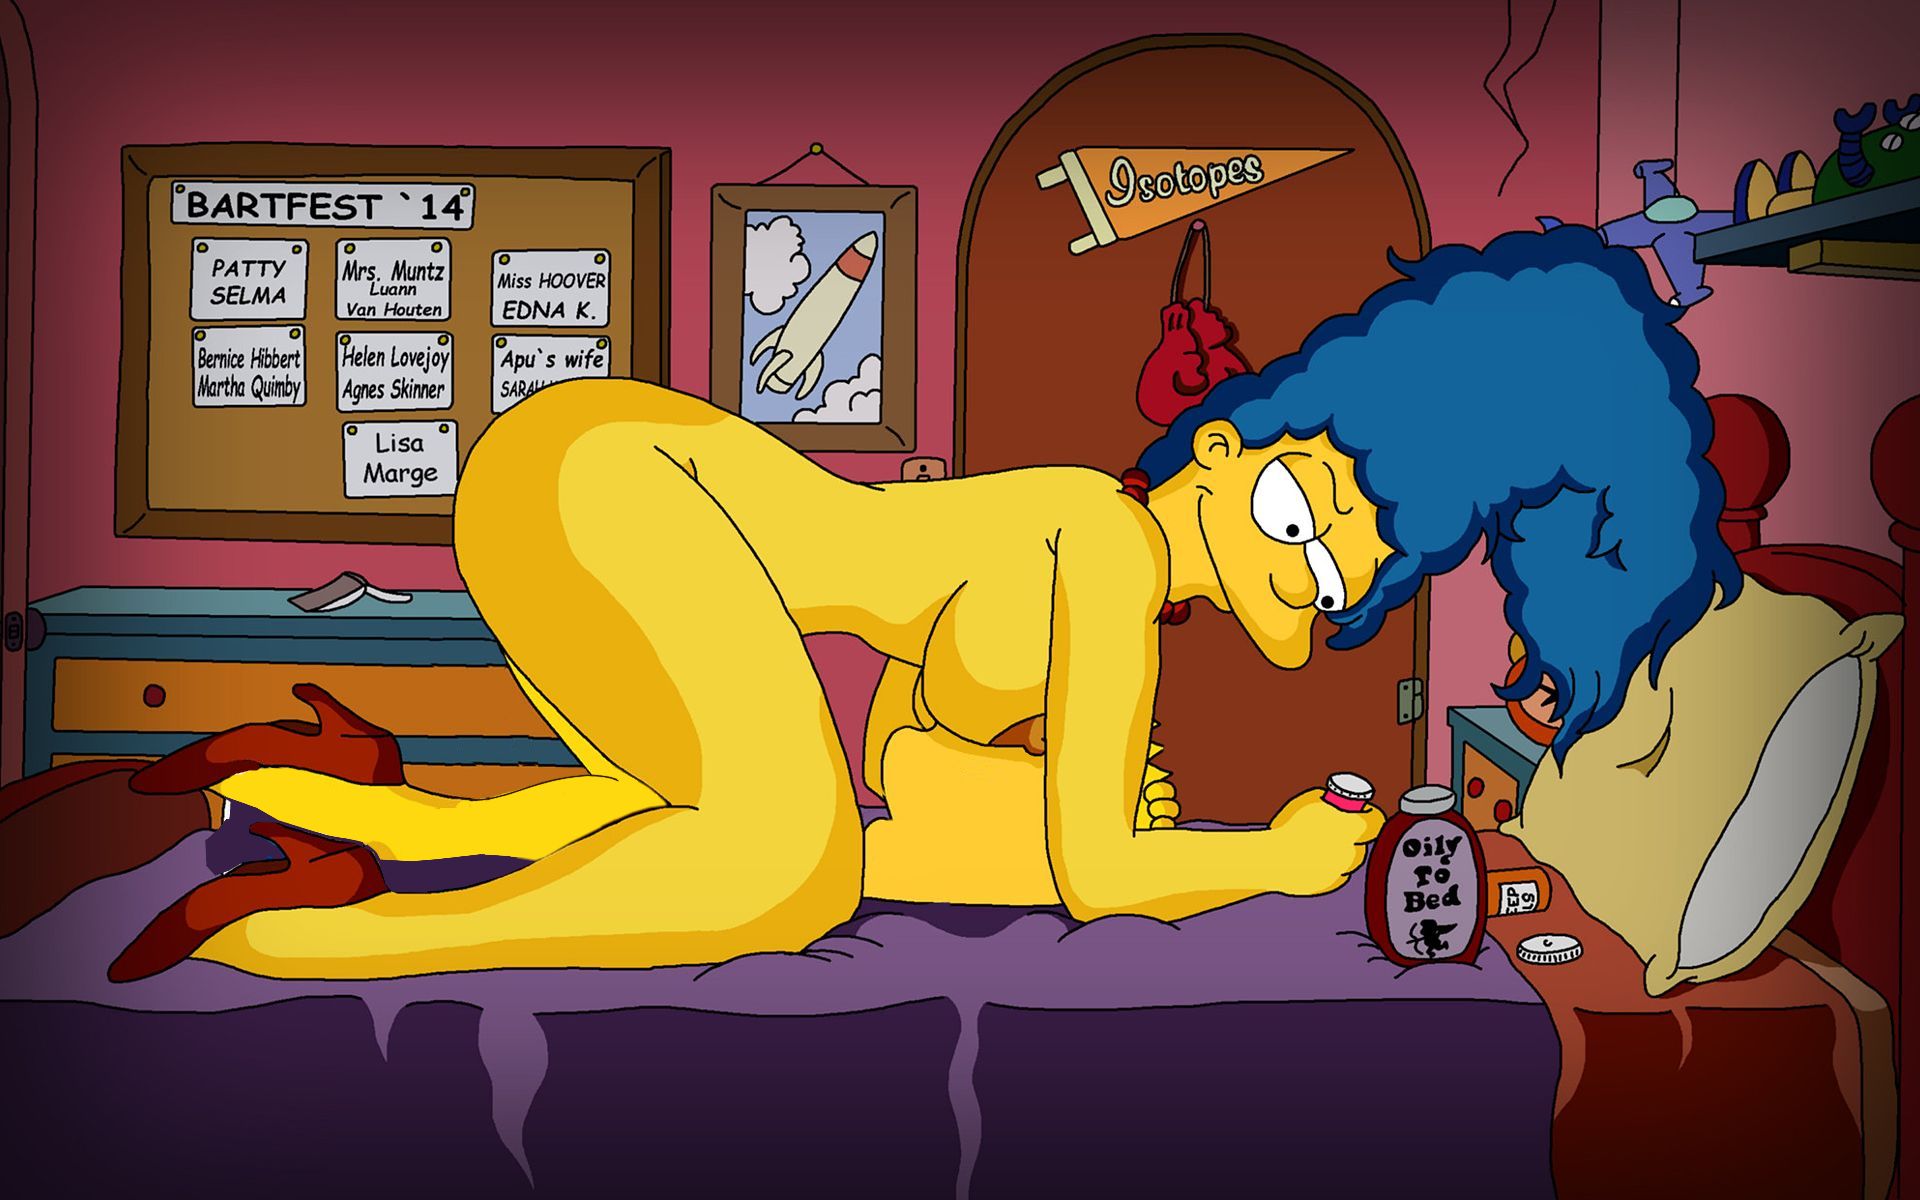 широкоформатные обои с Мардж Симпсон стоящей голышом на четвереньках над лежащим Бартом засунувшем нос между ее больших сисек